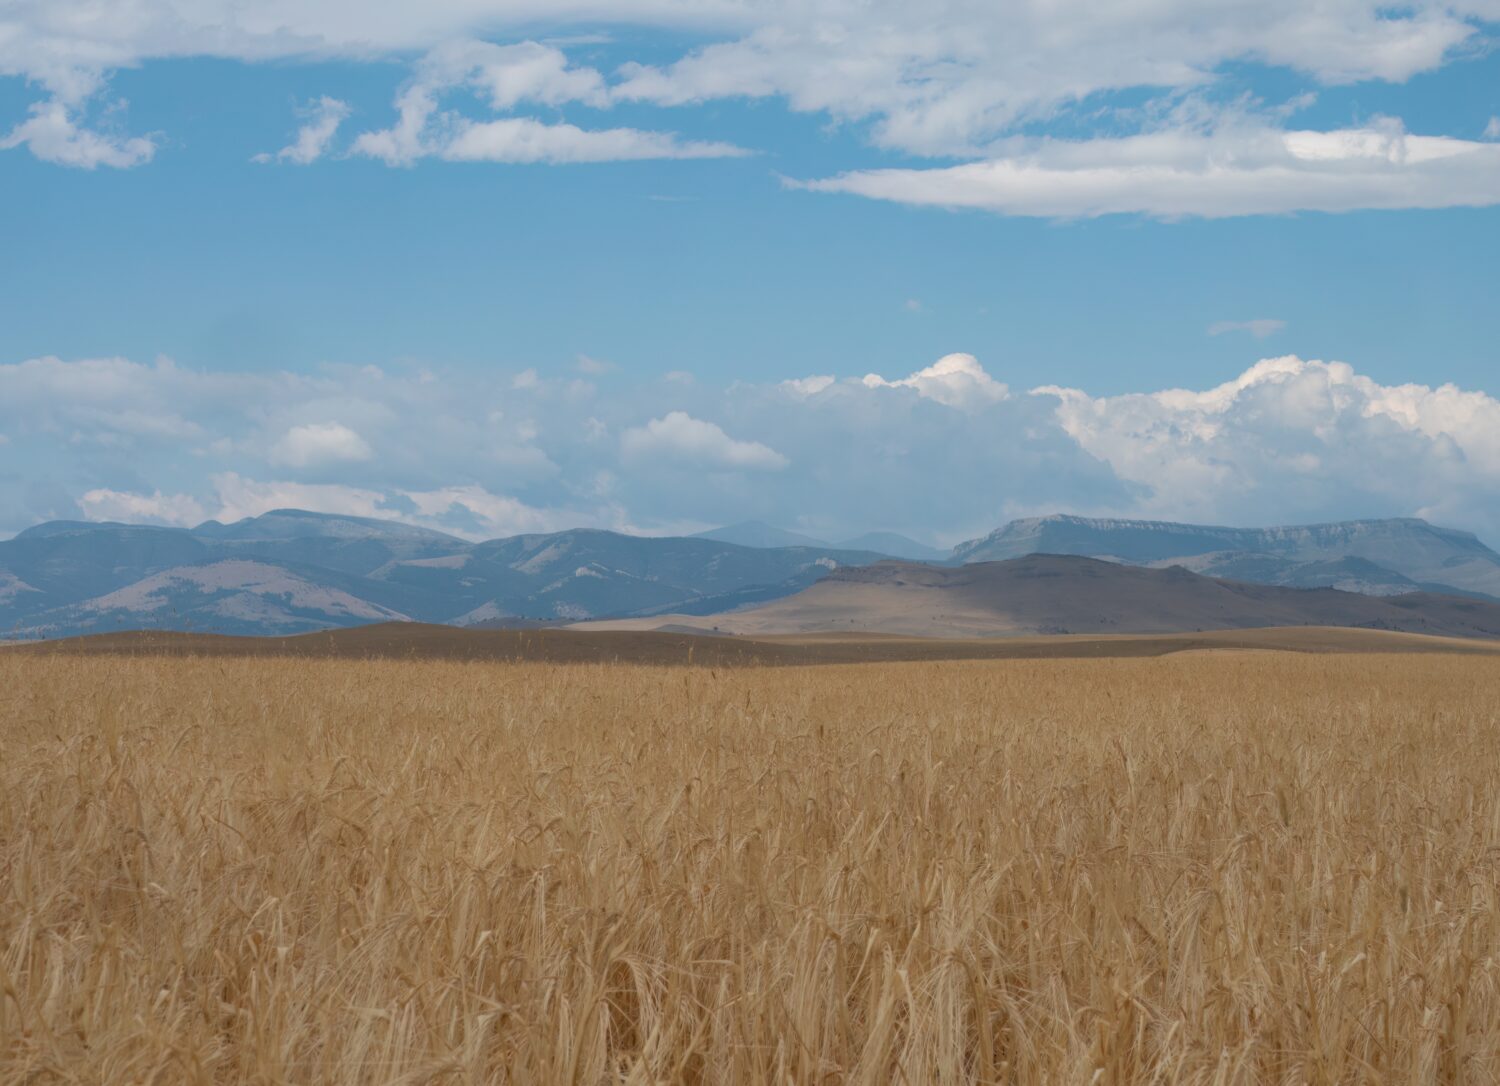 Grano dorato maturo pronto per il raccolto nel Montana centrale con le Montagne Rocciose in lontananza e cieli azzurri con nuvole sparse sopra.